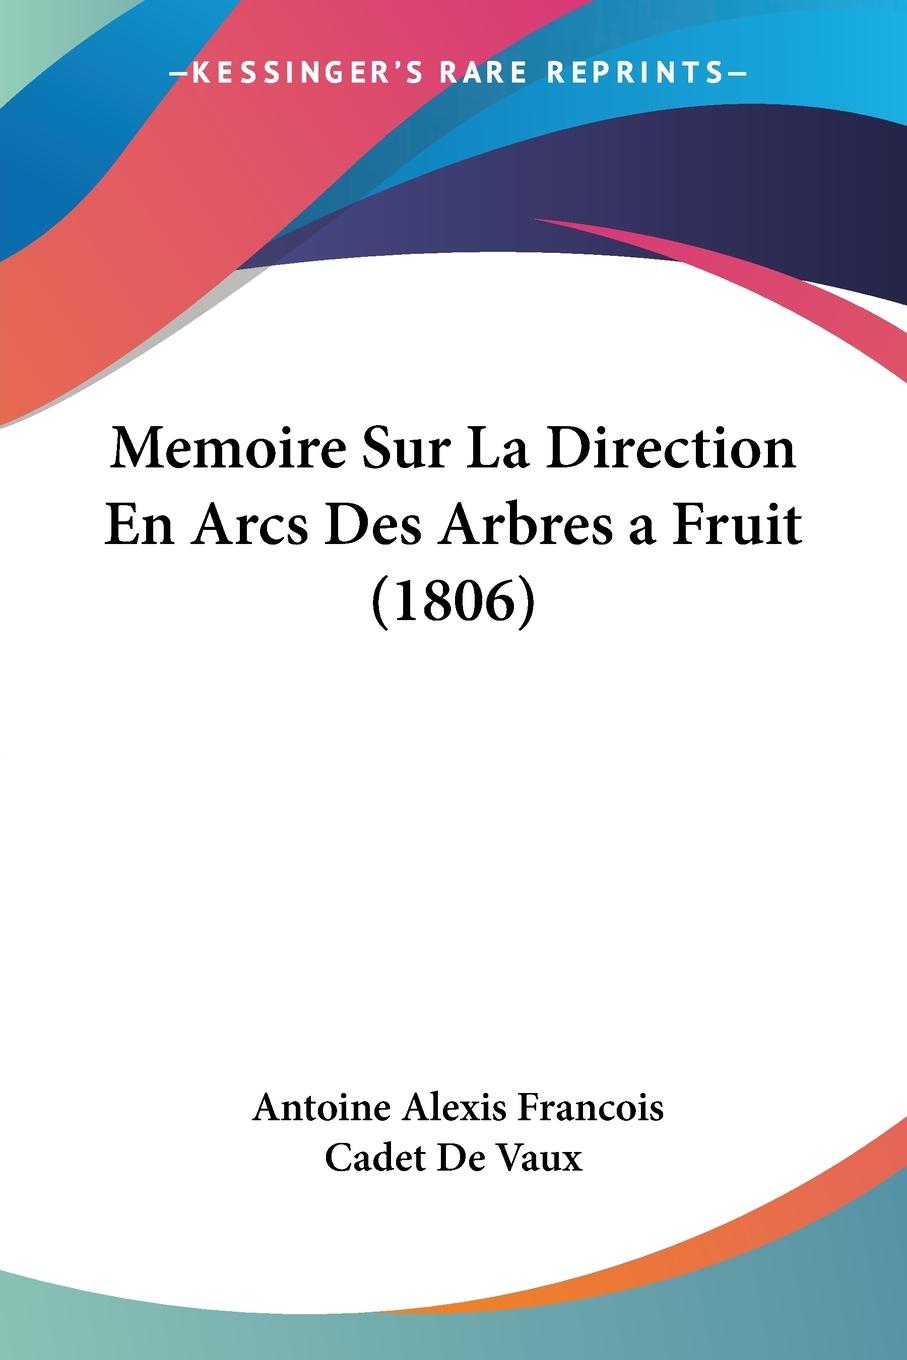 Memoire Sur La Direction En Arcs Des Arbres a Fruit (1806) - De Vaux, Antoine Alexis Francois Cadet